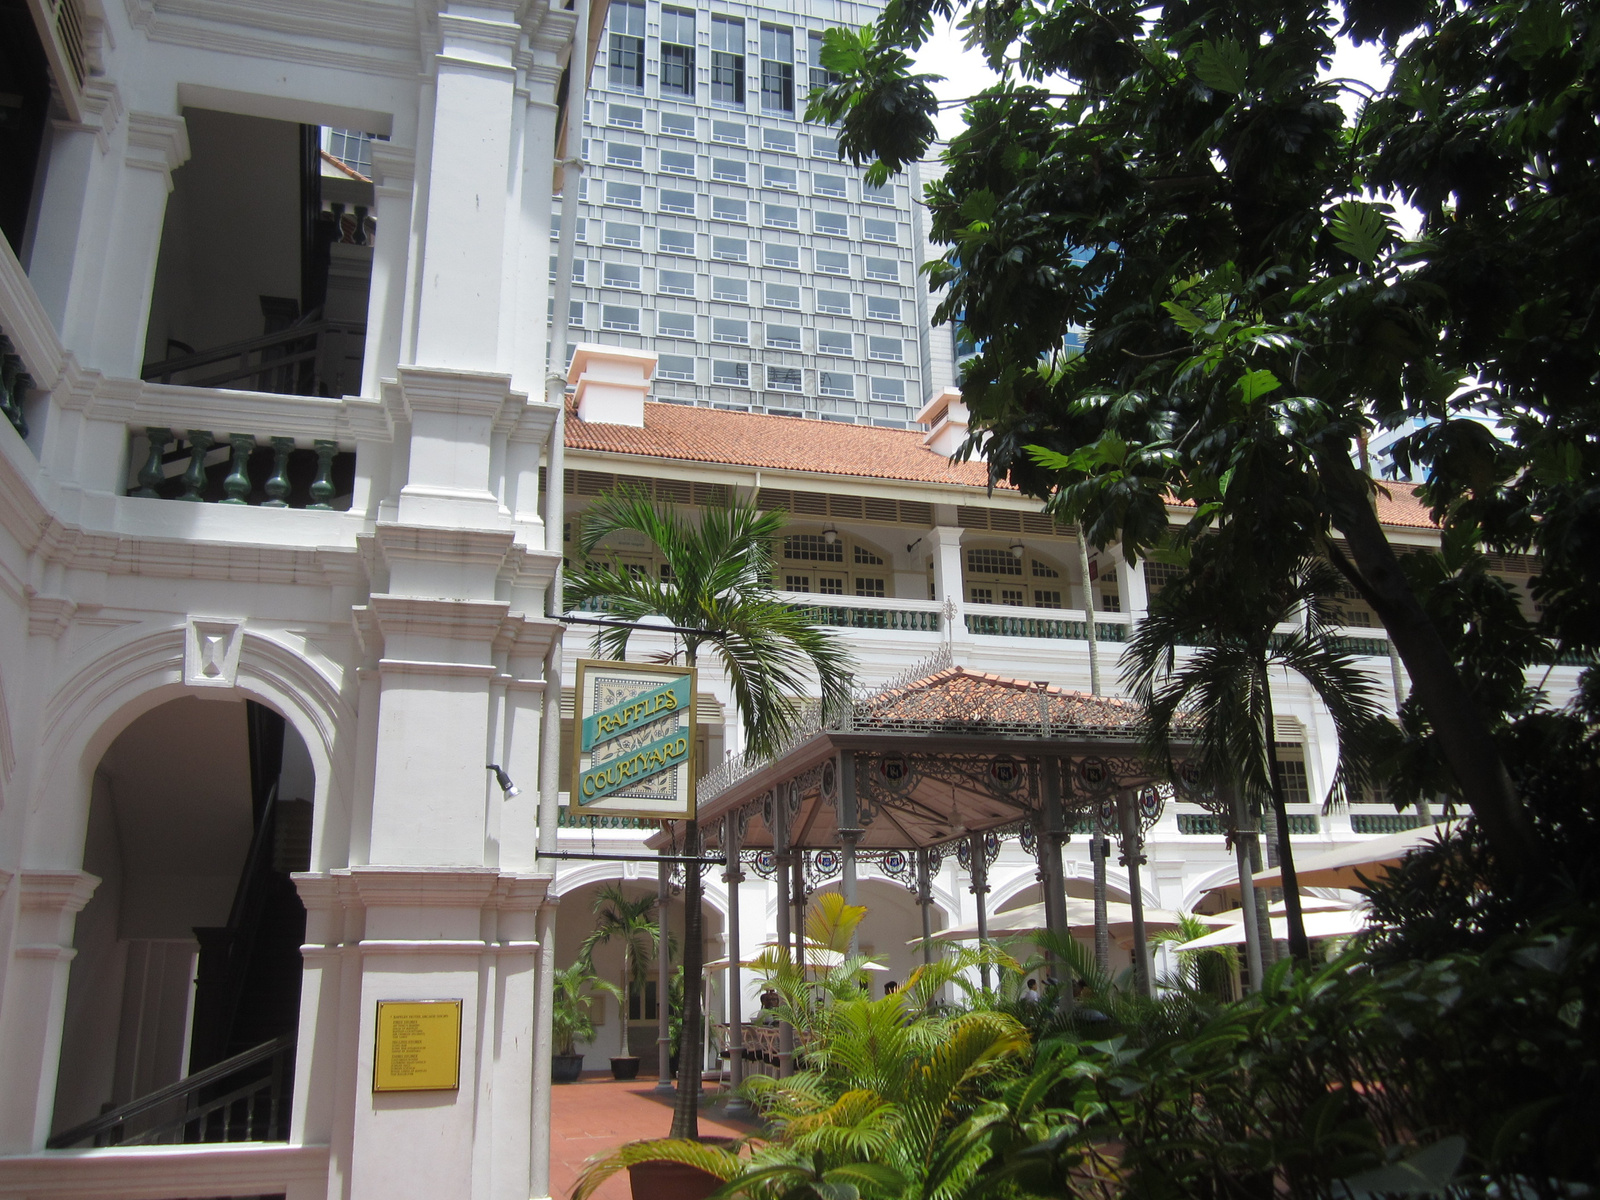 FSZ680 - Szingapúr, Raffles Hotel